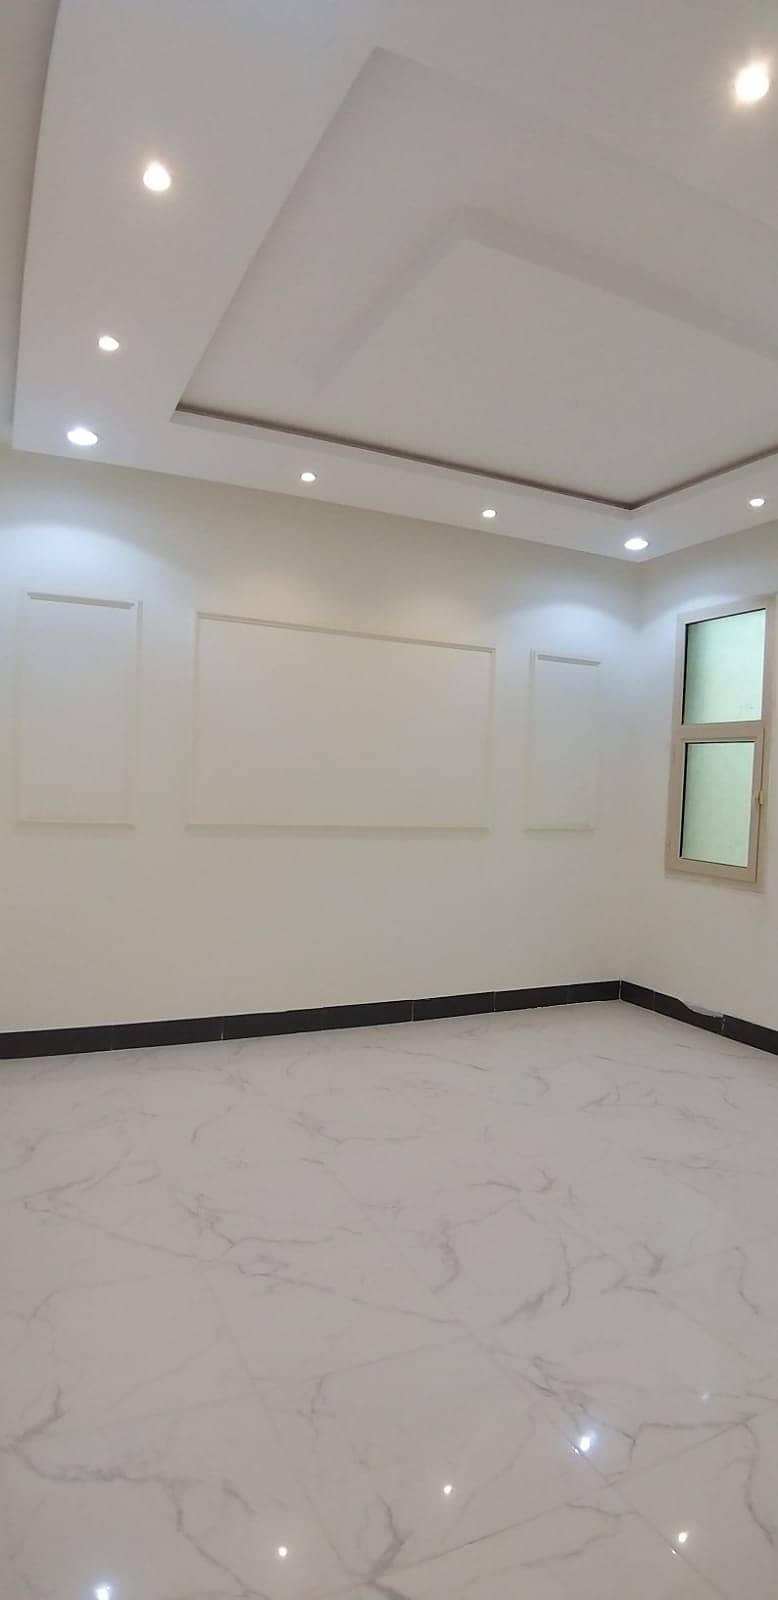 Ground floor for sale in Al Dar Al Baida district, south of Riyadh